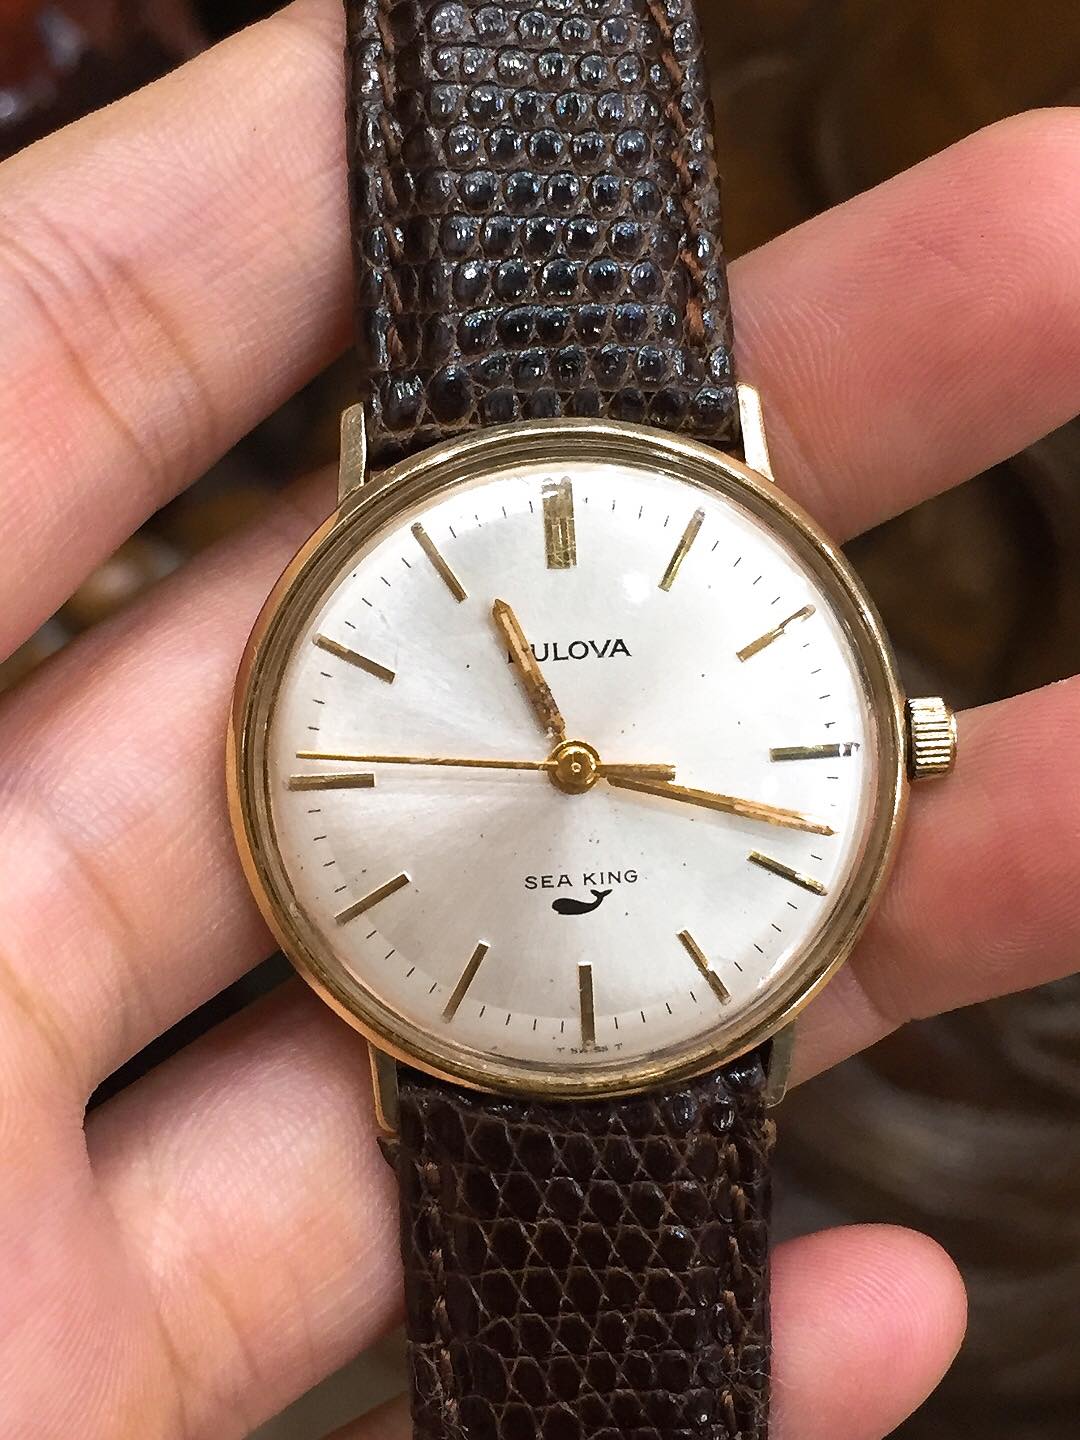 Mua bán đồng hồ Bulova cũ giá bao nhiêu? Ở đâu uy tín?